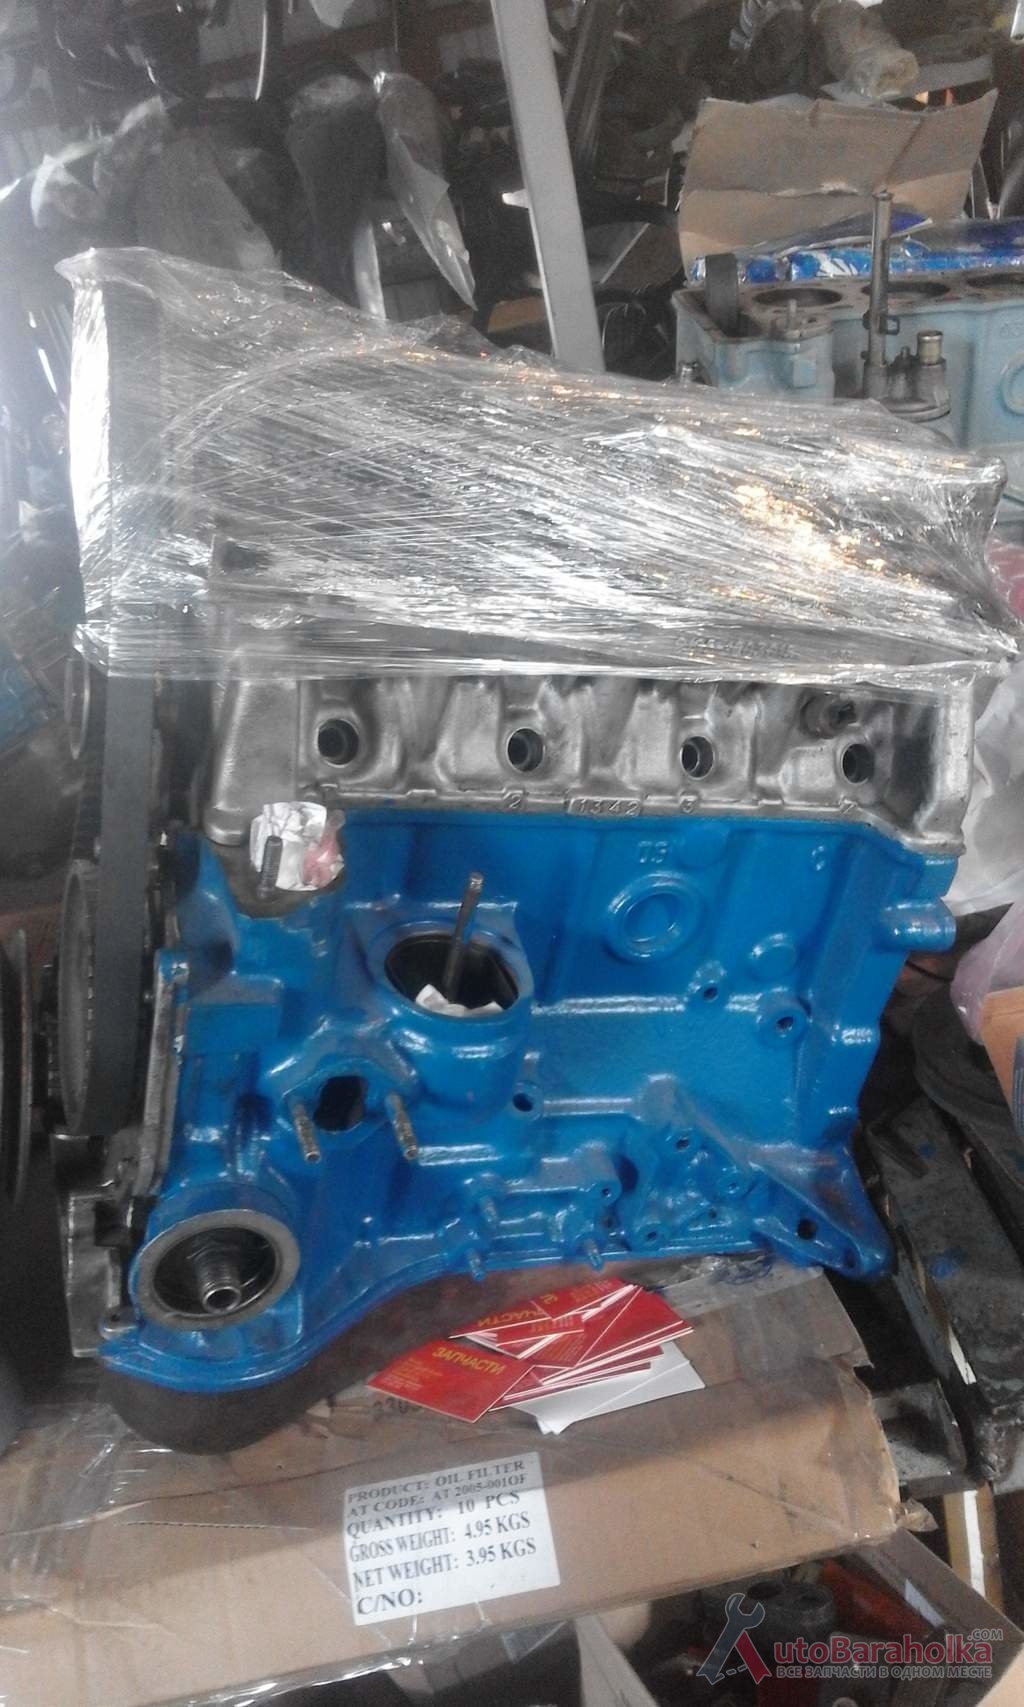 Продам Двигатель ДВС ВАЗ 2105 после кап ремонта. все детали оригинальные. проверенный. Гарантия 3 месяца Херсон